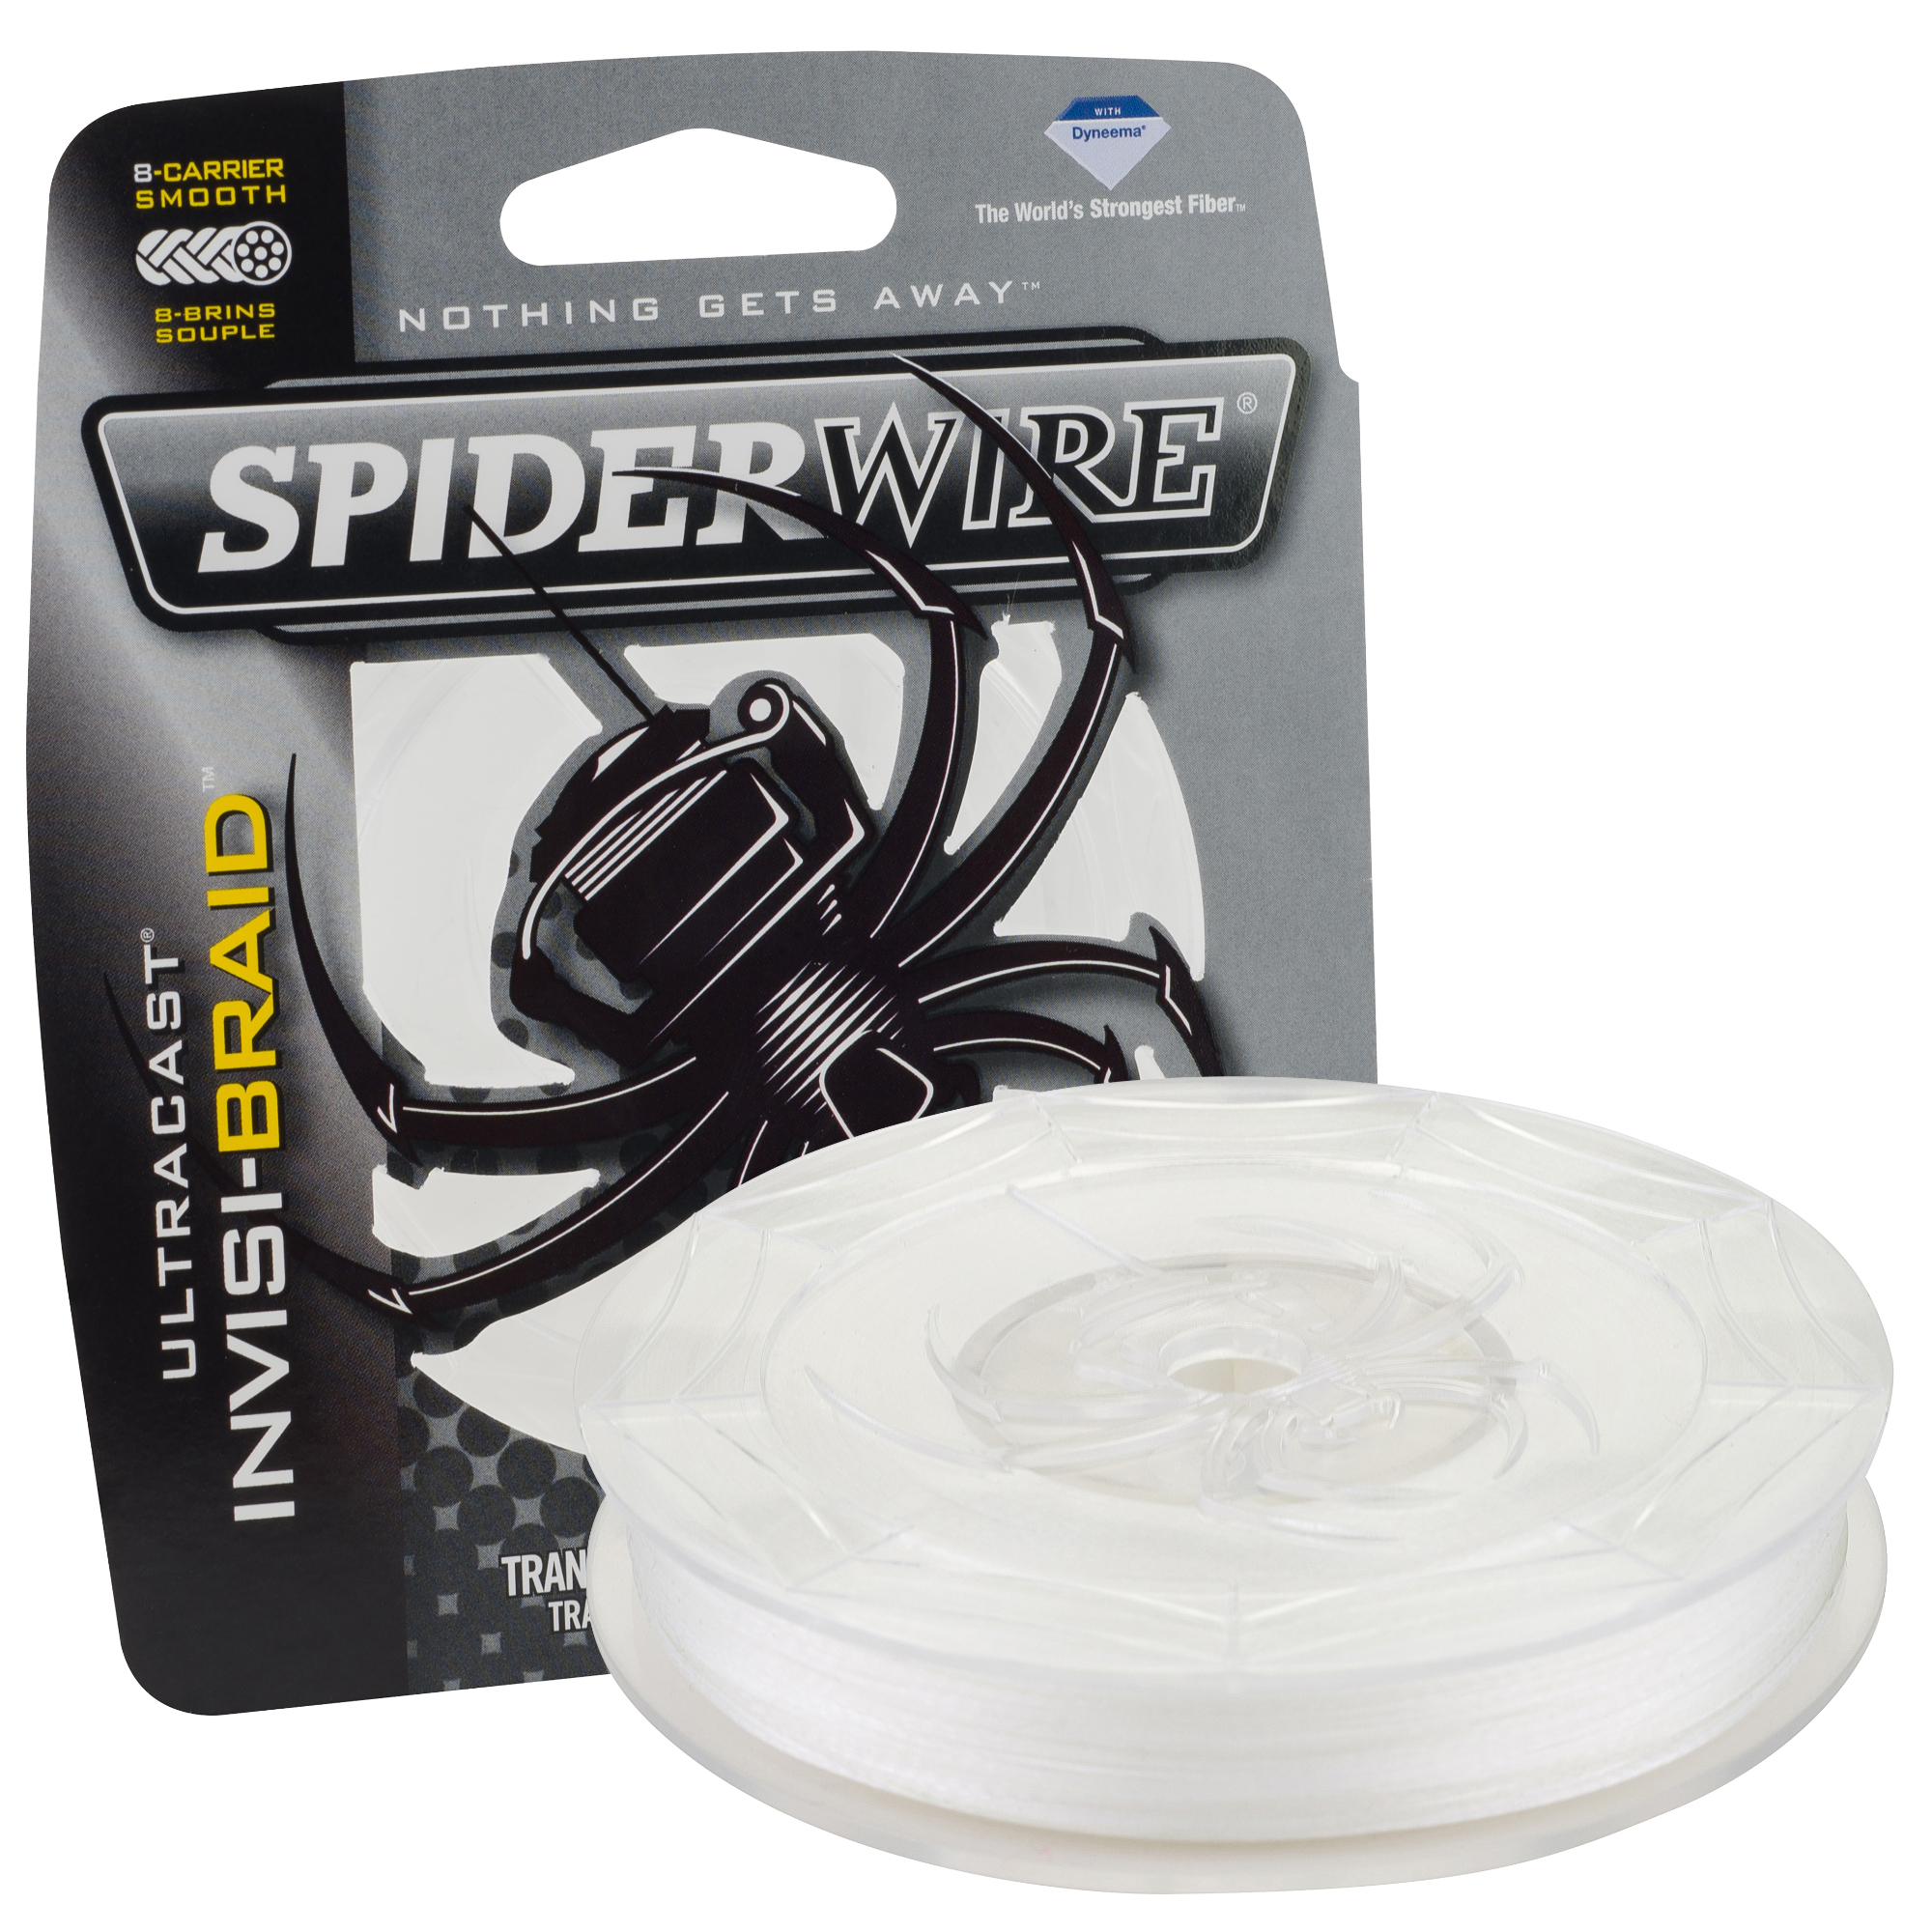 SpiderWire DuraBraid Braided Line Review - Wired2Fish